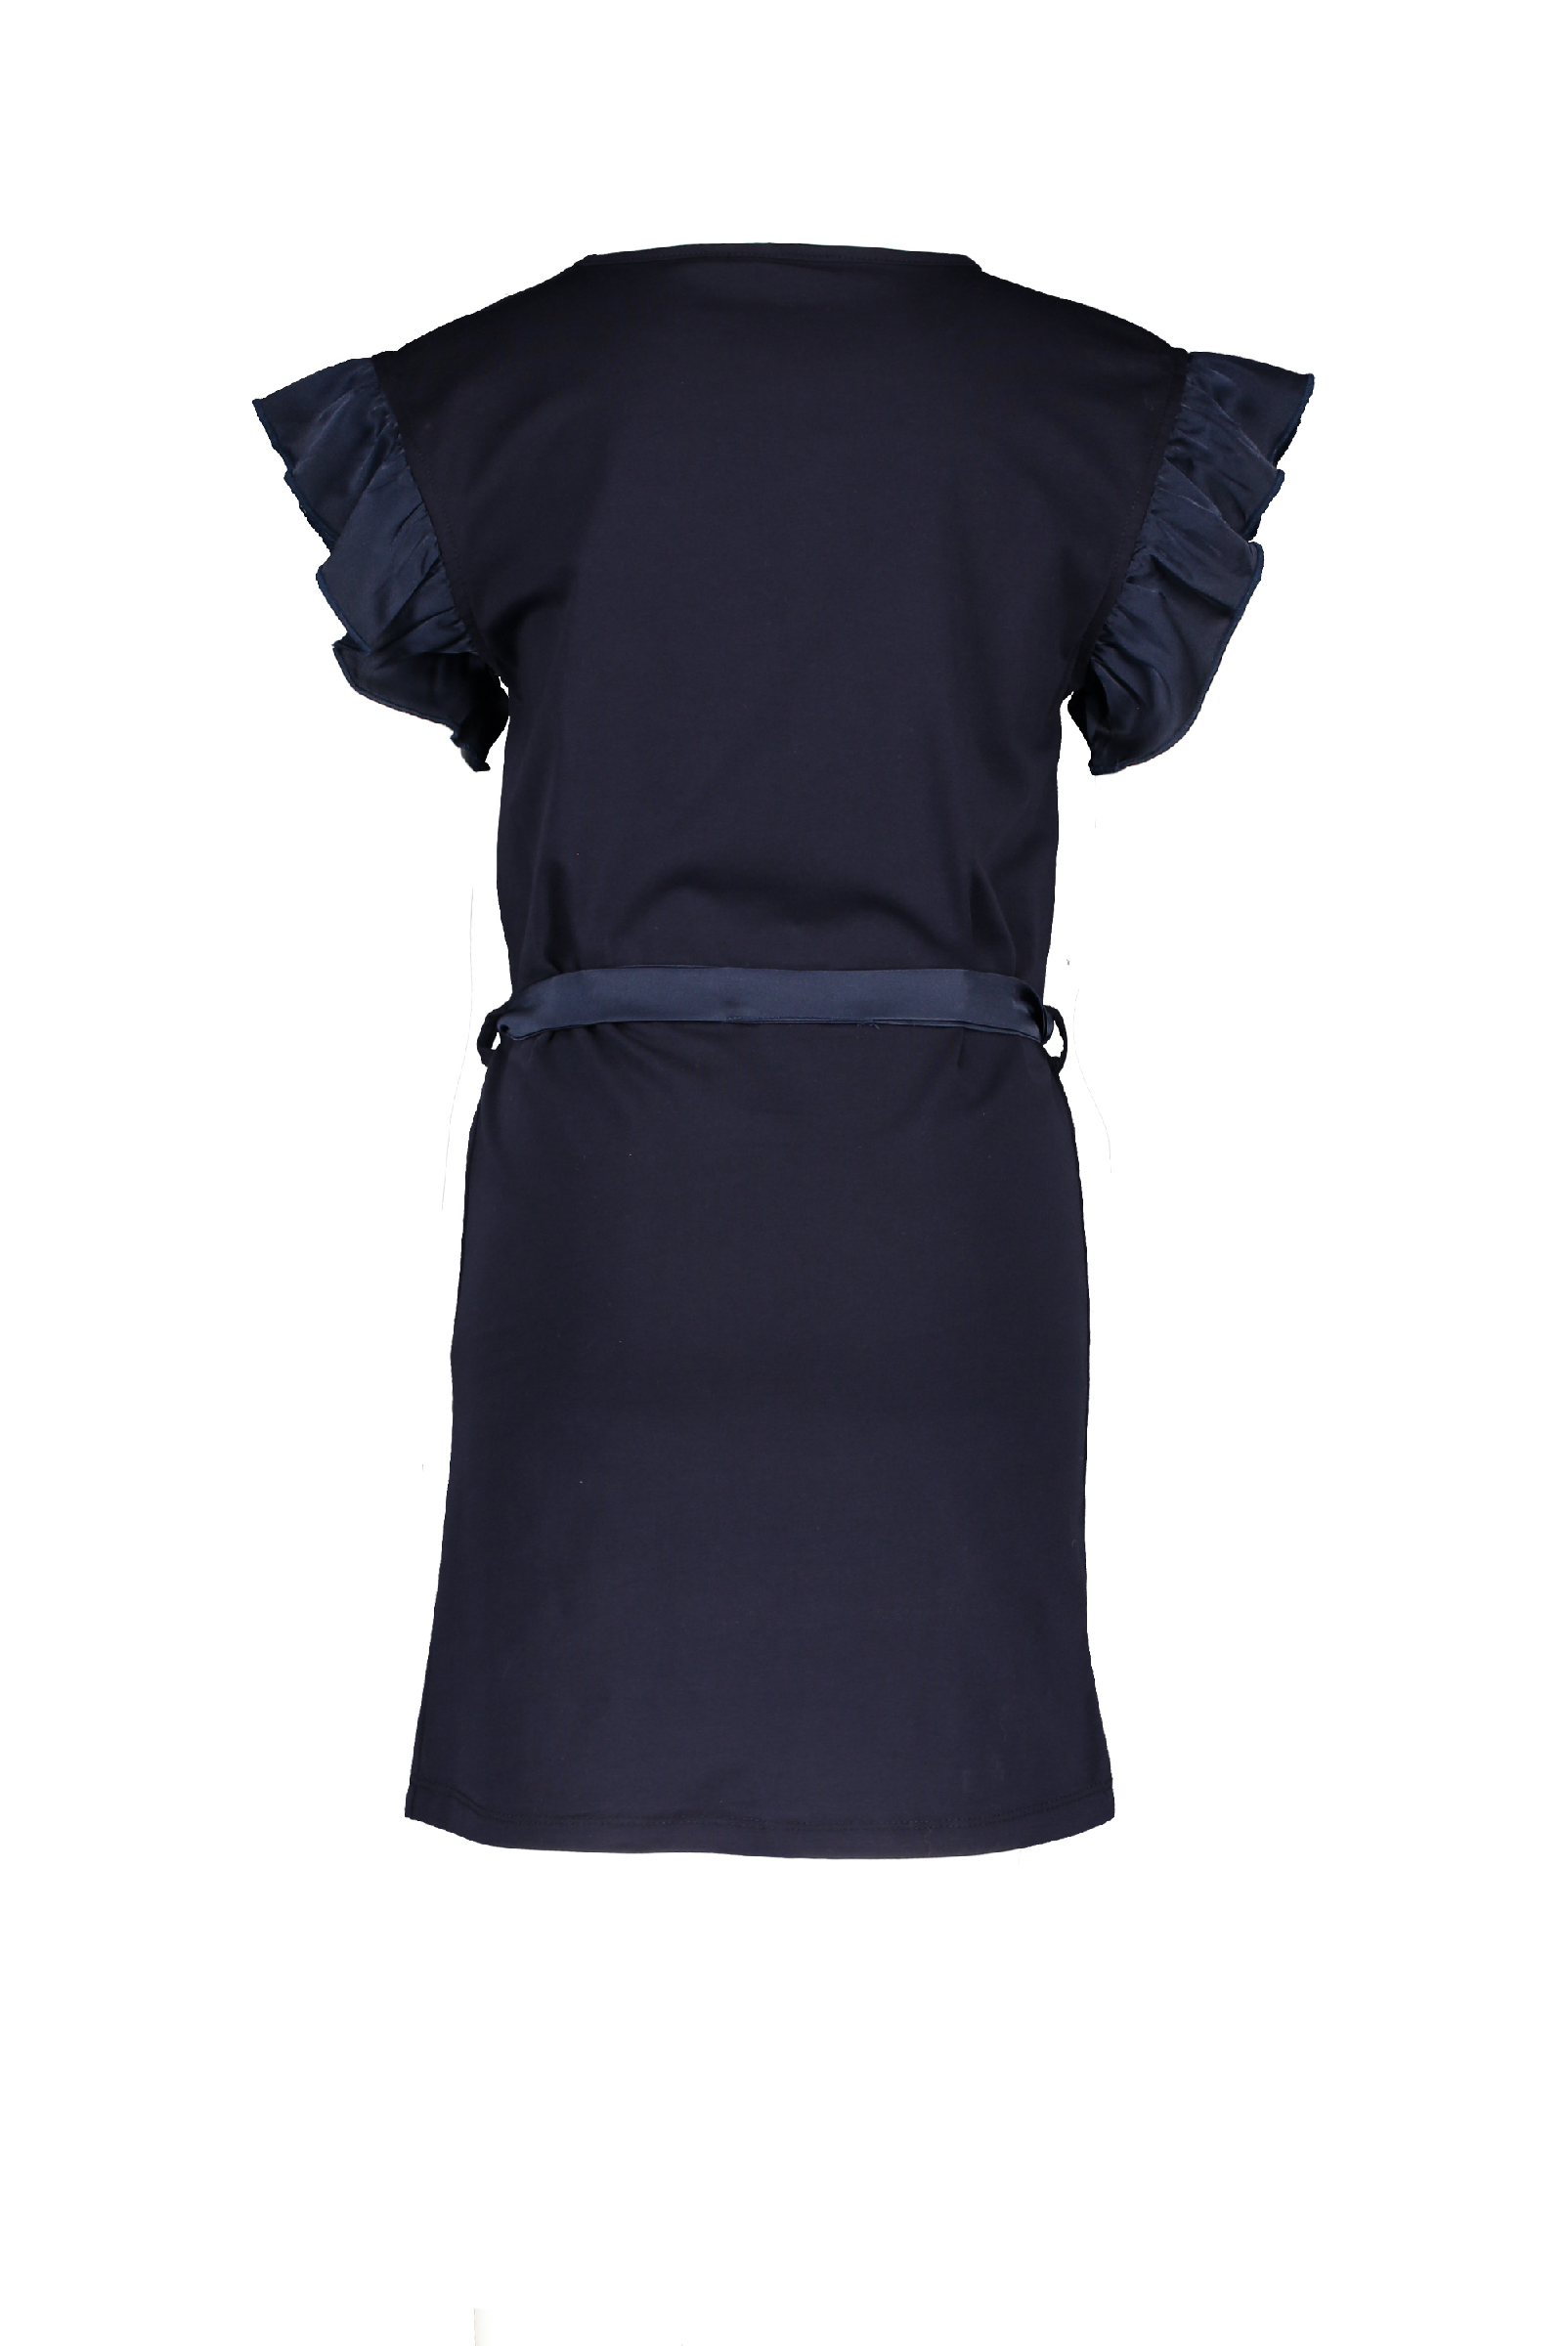 Meisjes Maya ss dress with ruffels and belt van NoNo in de kleur Navy Blazer in maat 146, 152.